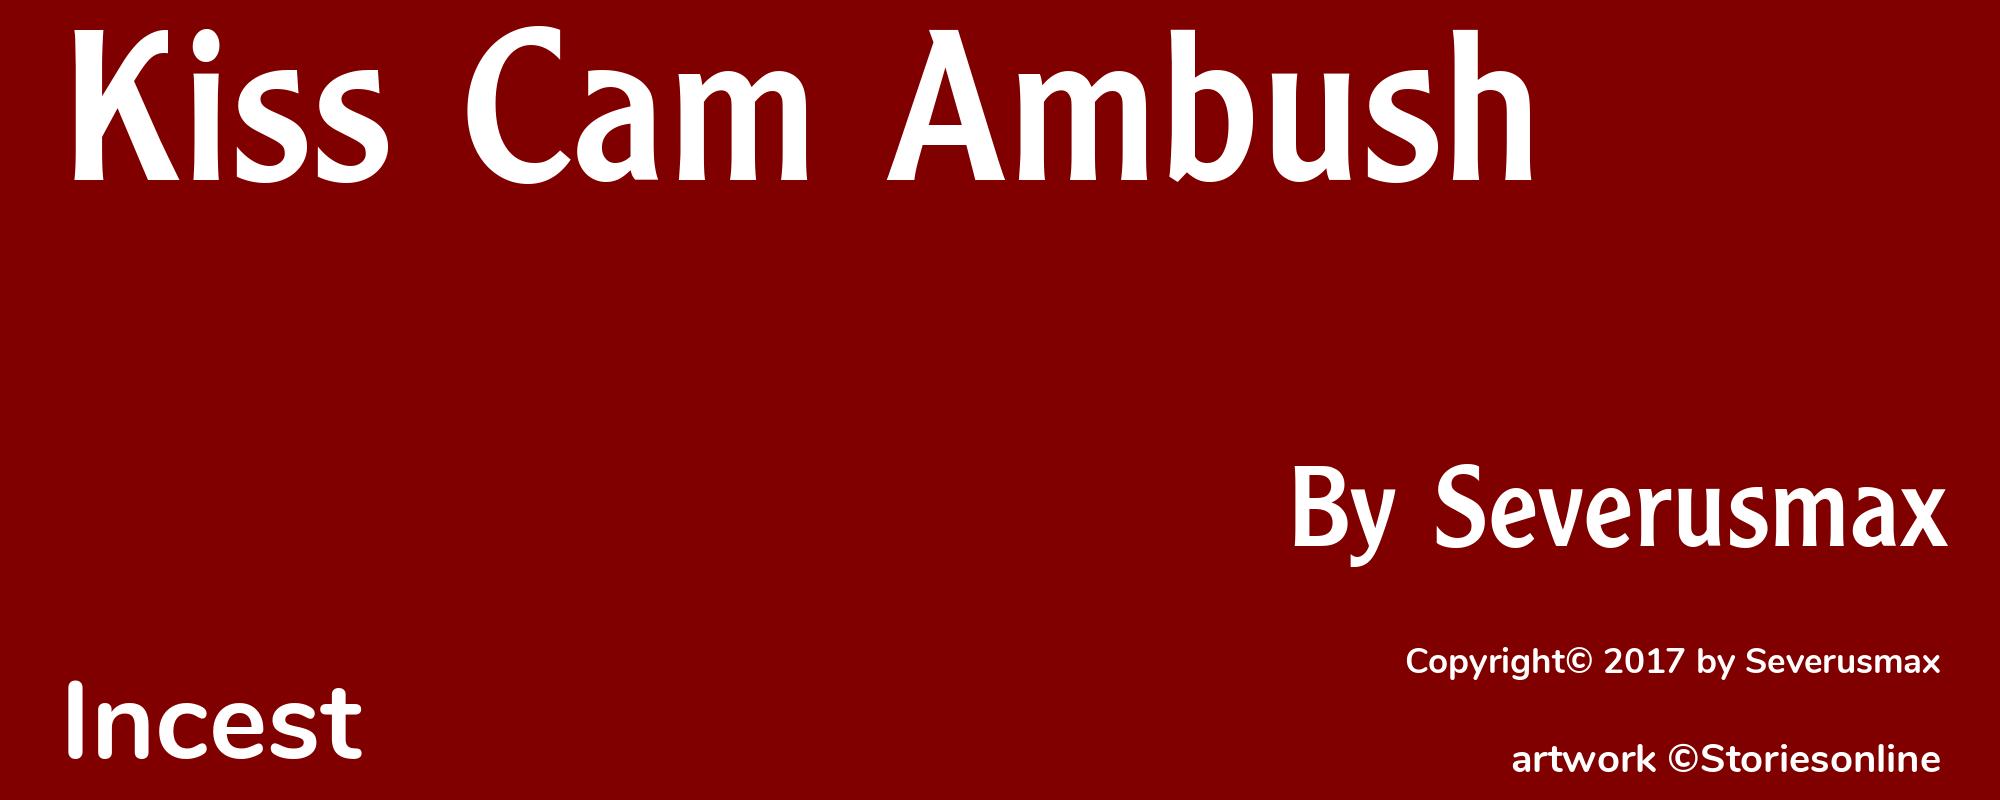 Kiss Cam Ambush - Cover